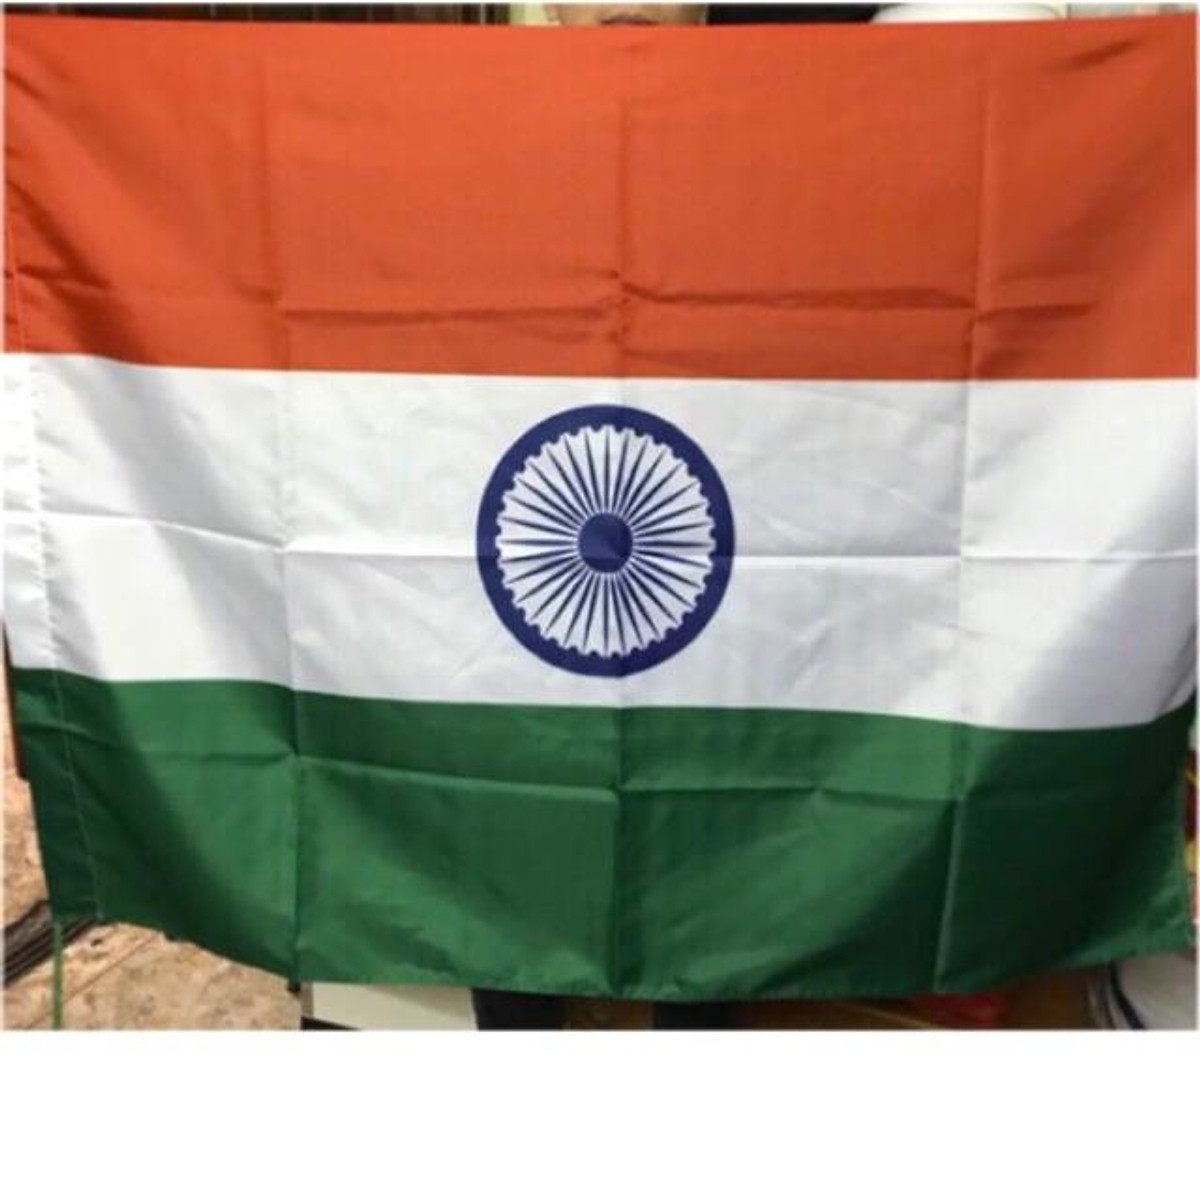 Hãy ngắm nhìn bức ảnh cờ Ấn Độ thật đẹp mắt, với màu sắc tươi sáng và hình ảnh chạm khắc tỉ mỉ. Đây là biểu tượng quốc gia của quốc gia đông dân nhất trên thế giới, nơi có văn hóa và ẩm thực đa dạng, cùng những địa danh lịch sử nổi tiếng. Đừng bỏ lỡ cơ hội thưởng thức niềm tự hào của người Ấn Độ!